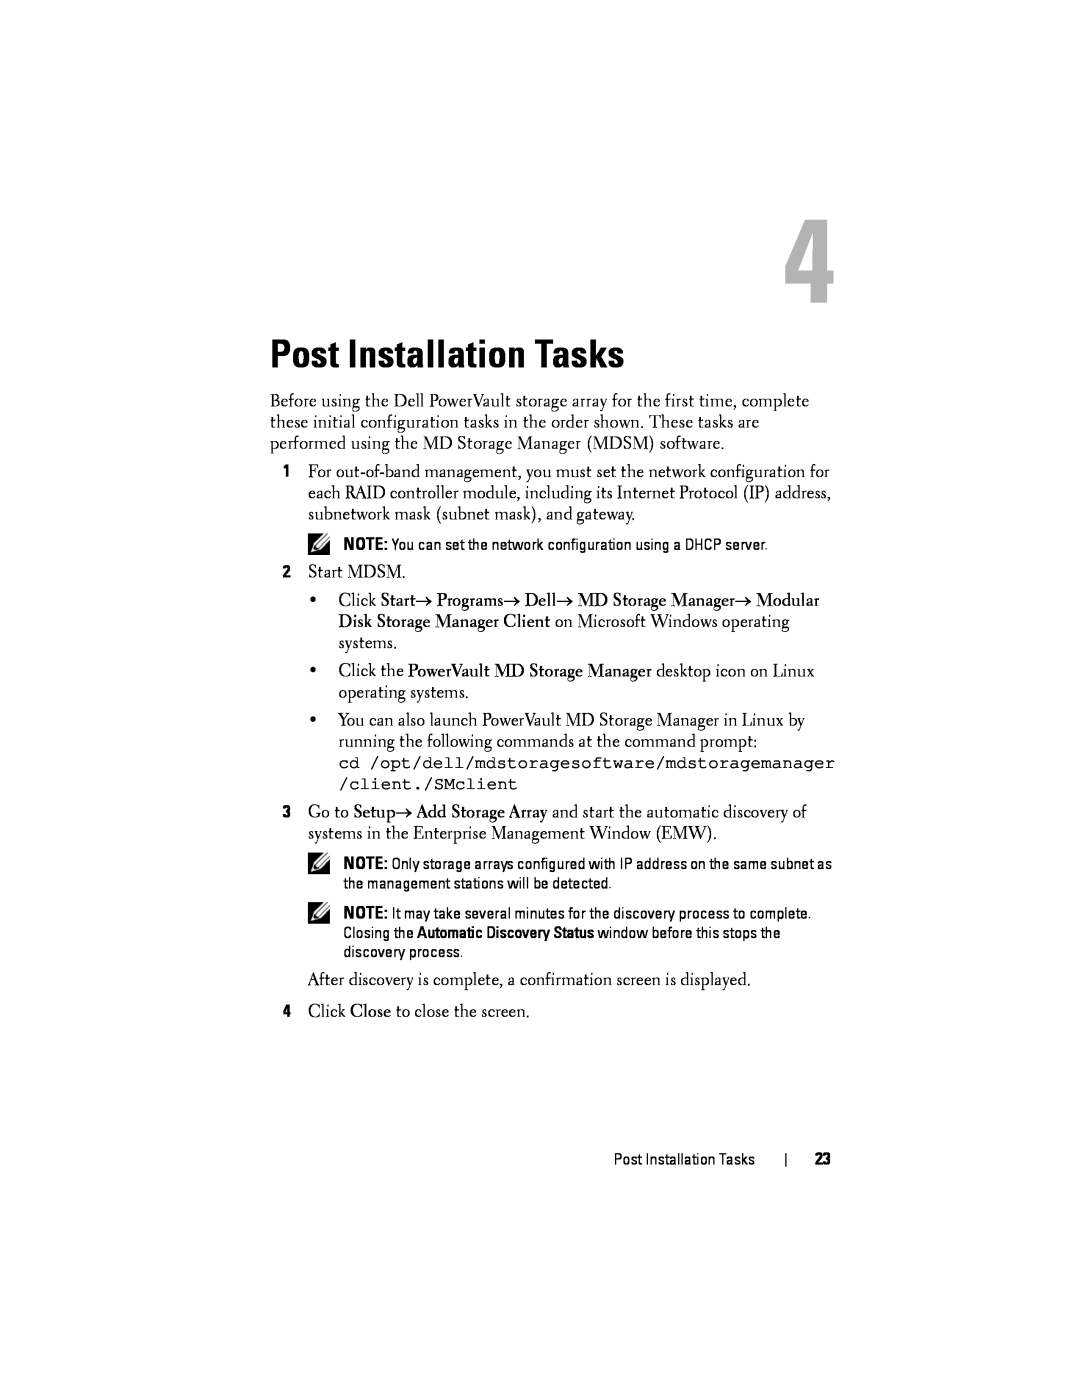 Dell MD3620F, MD3600f manual Post Installation Tasks 